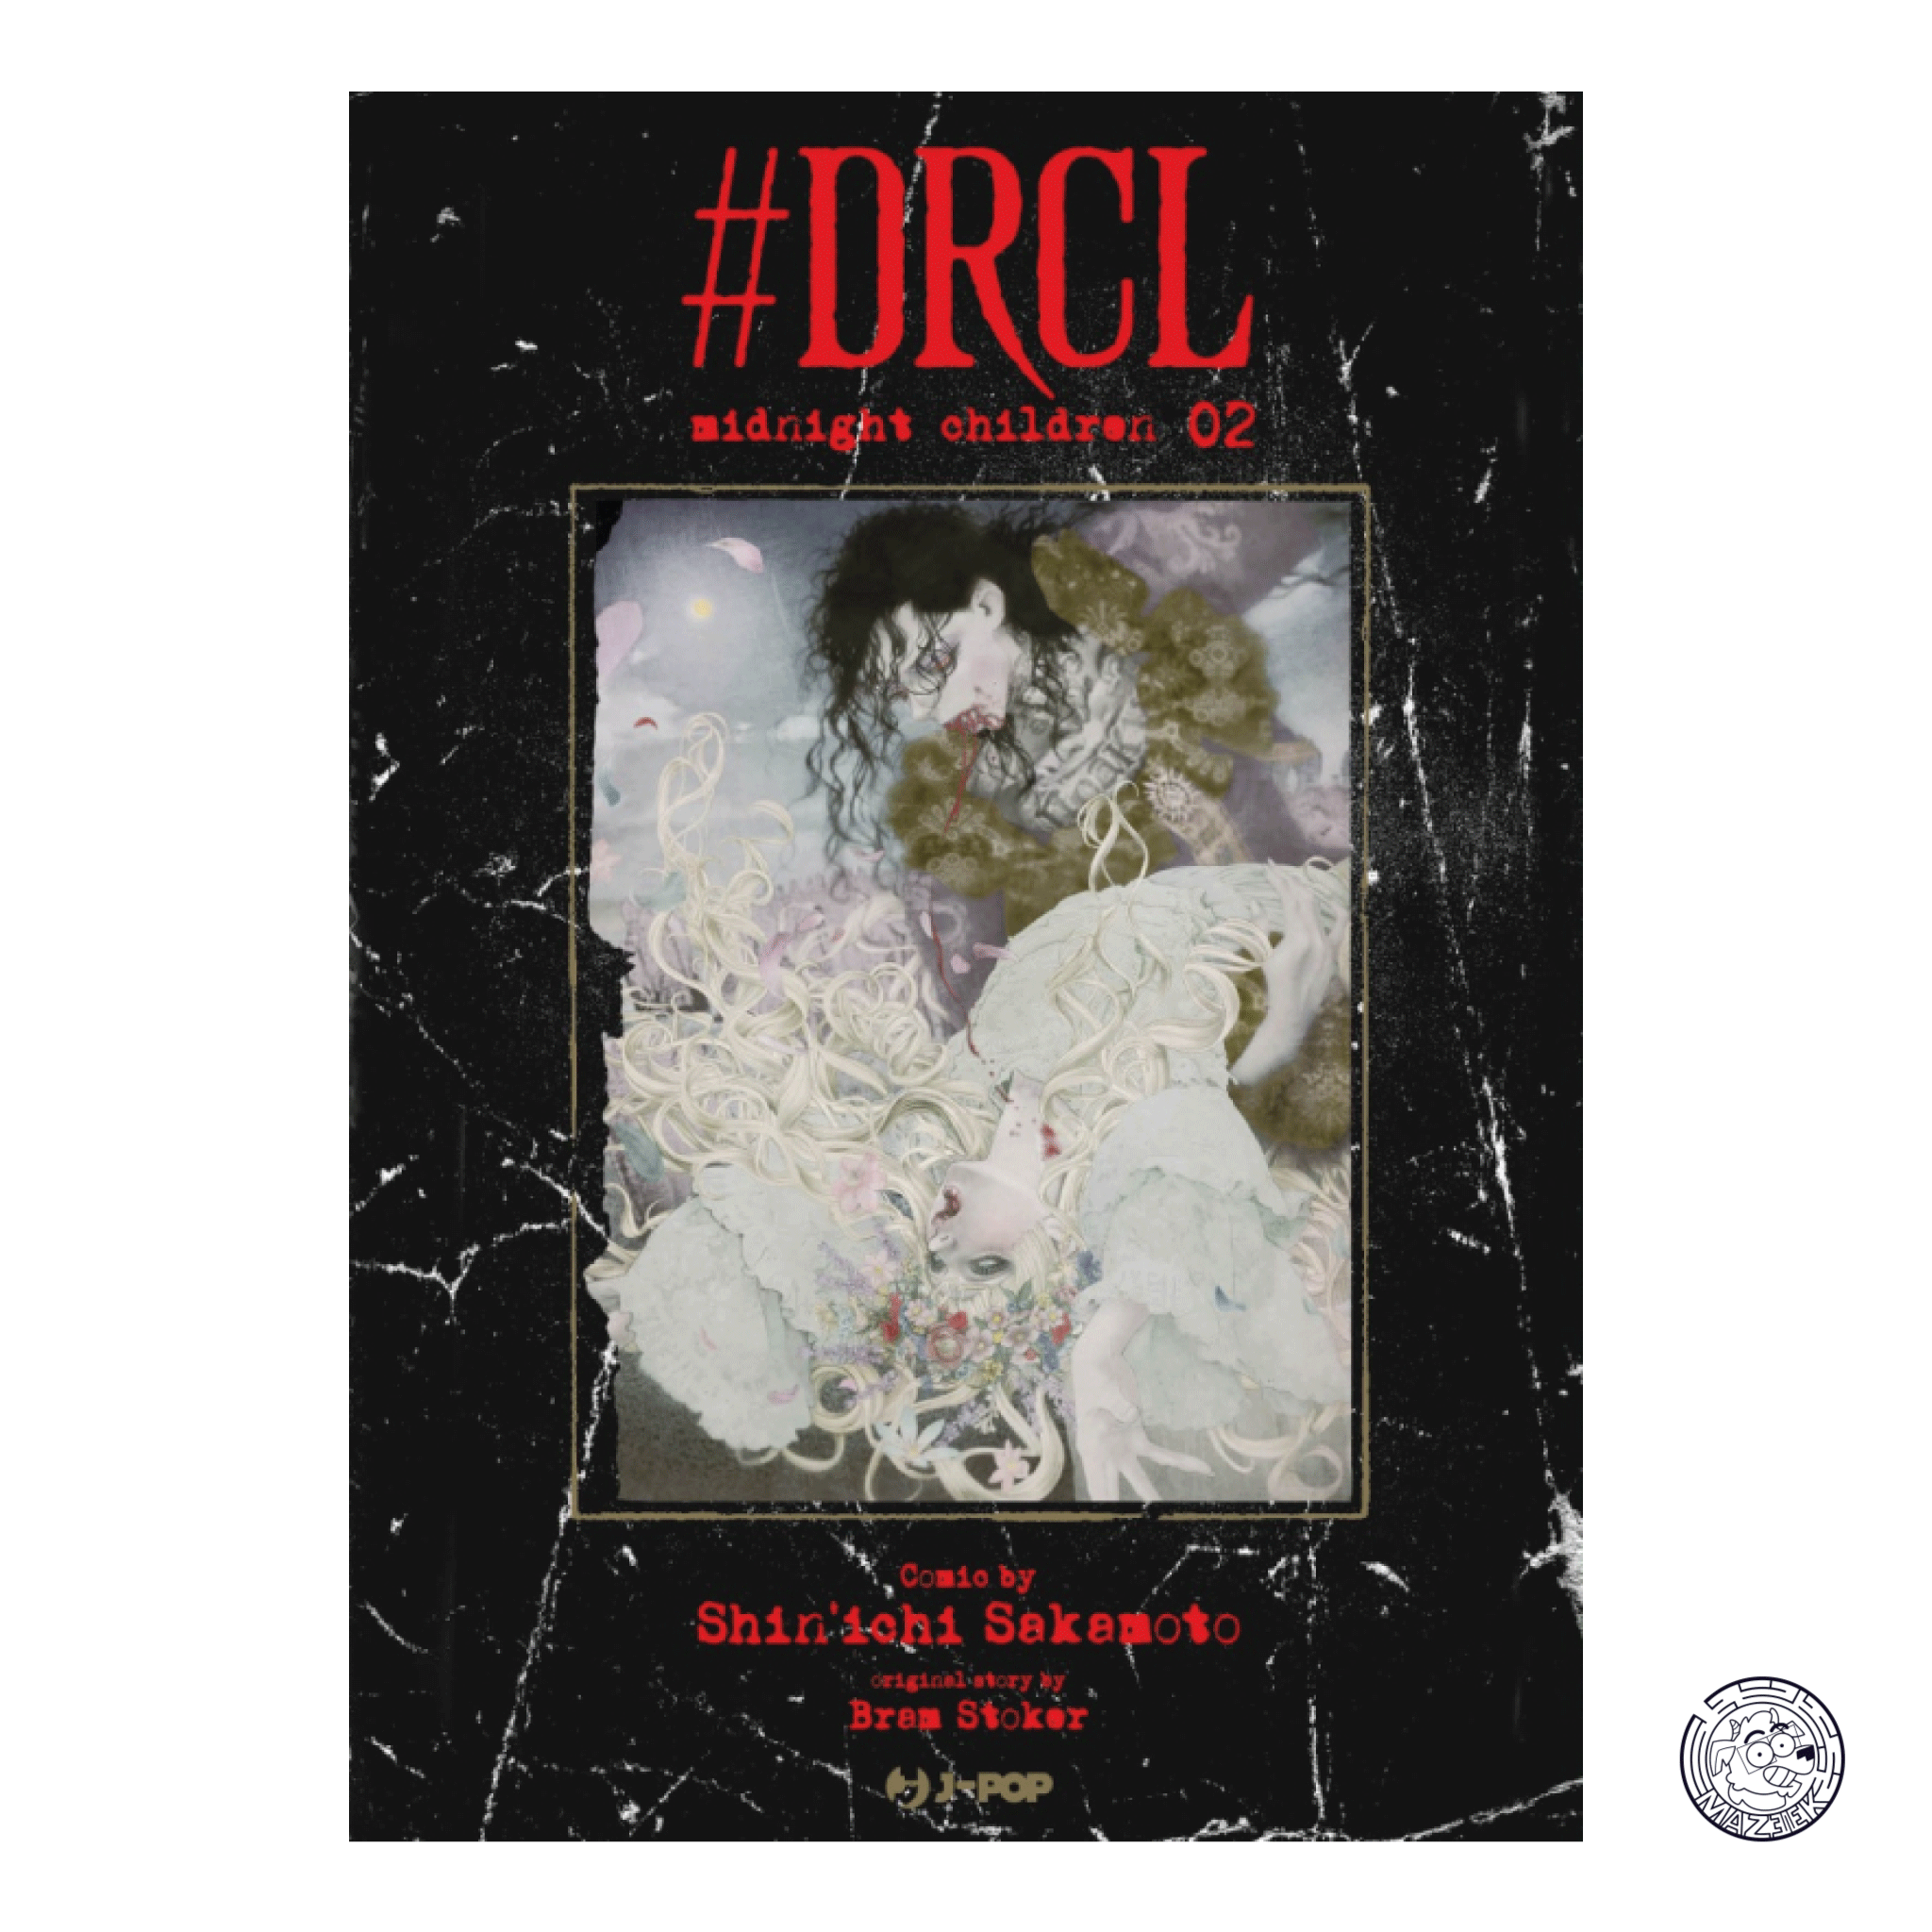 #DRCL: Midnight Children 02